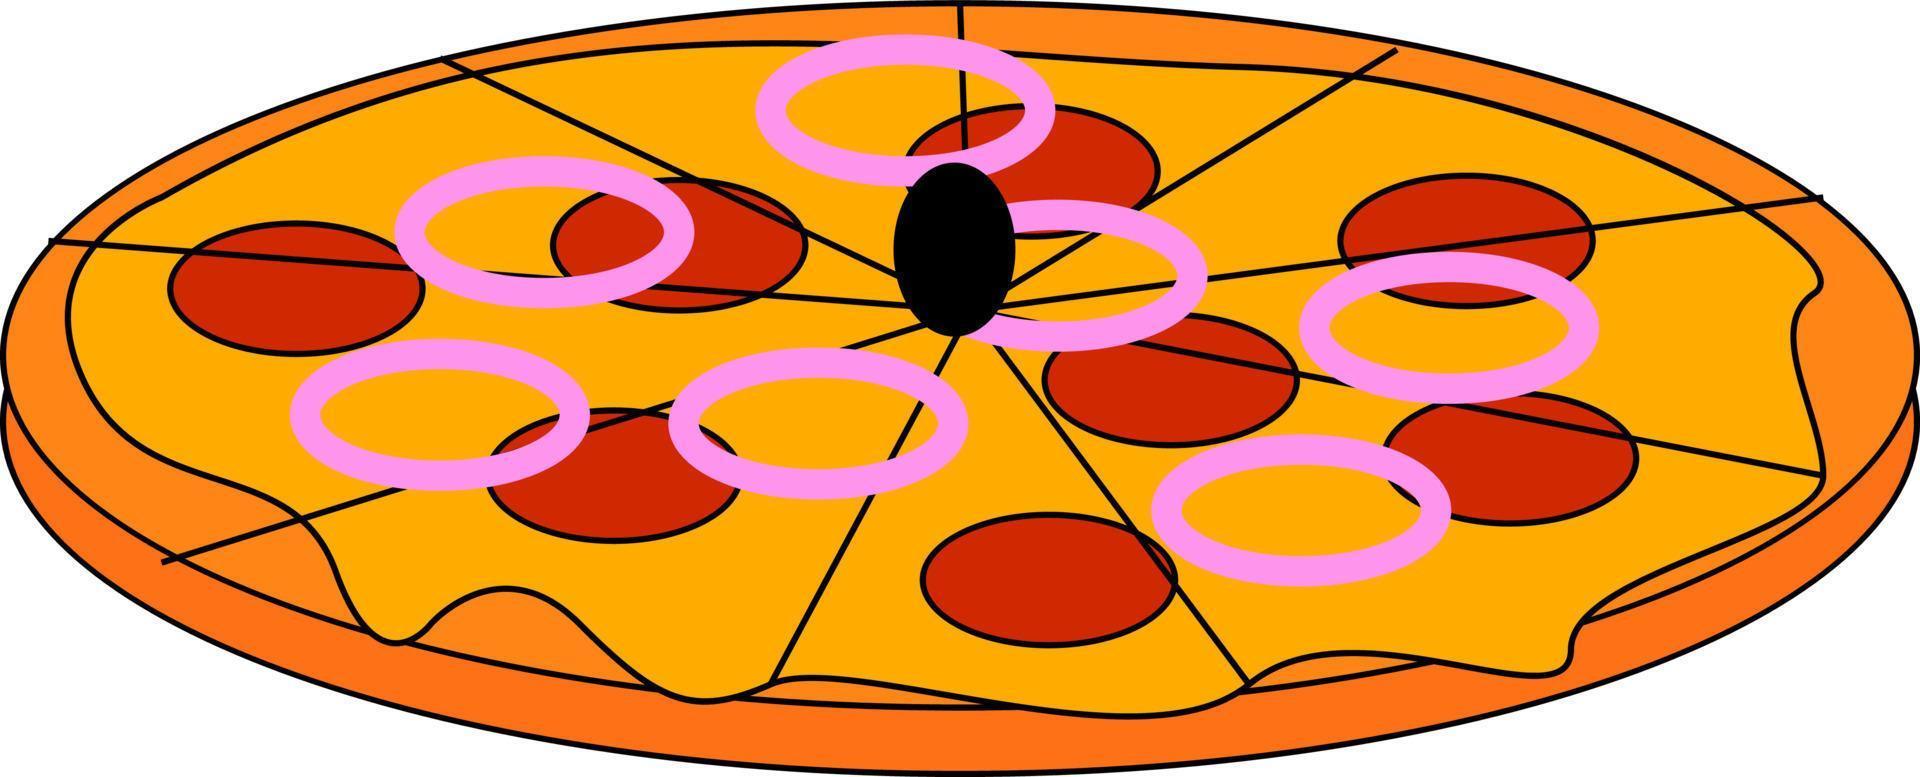 Pizza à l'oignon, illustration, vecteur sur fond blanc